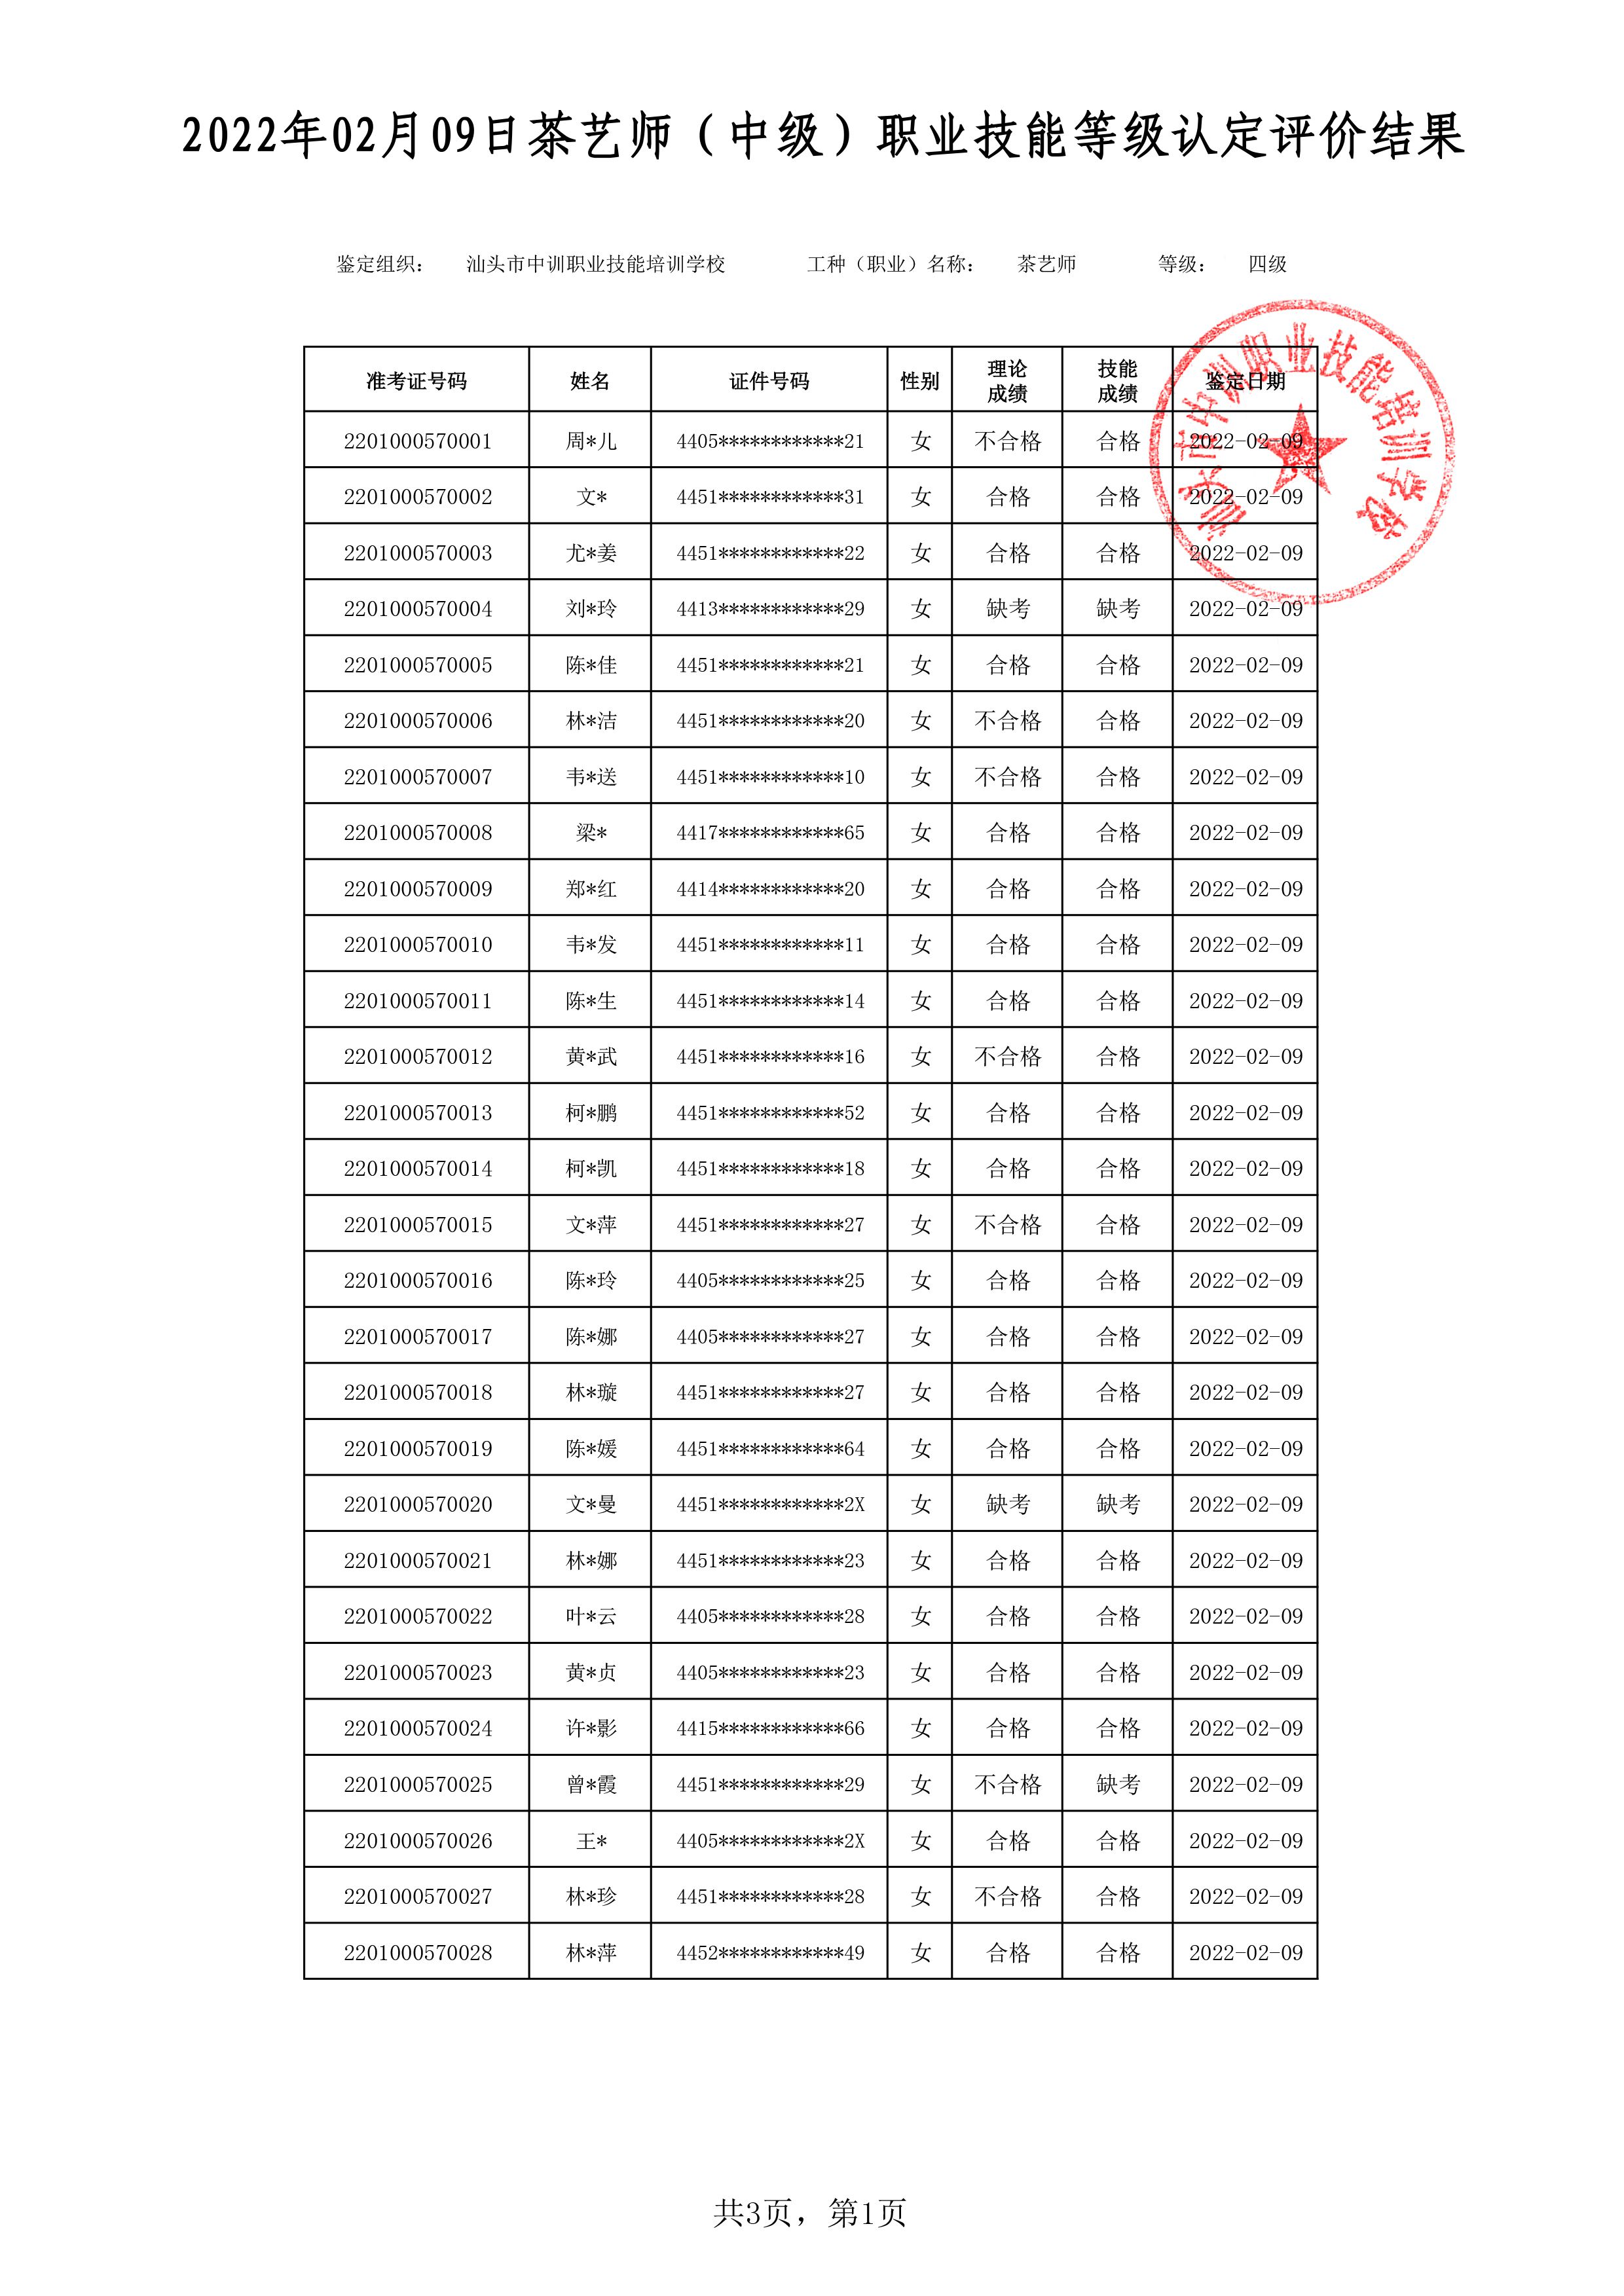 22-02-09四级茶艺师考试鉴定名册表-1 副本.jpg